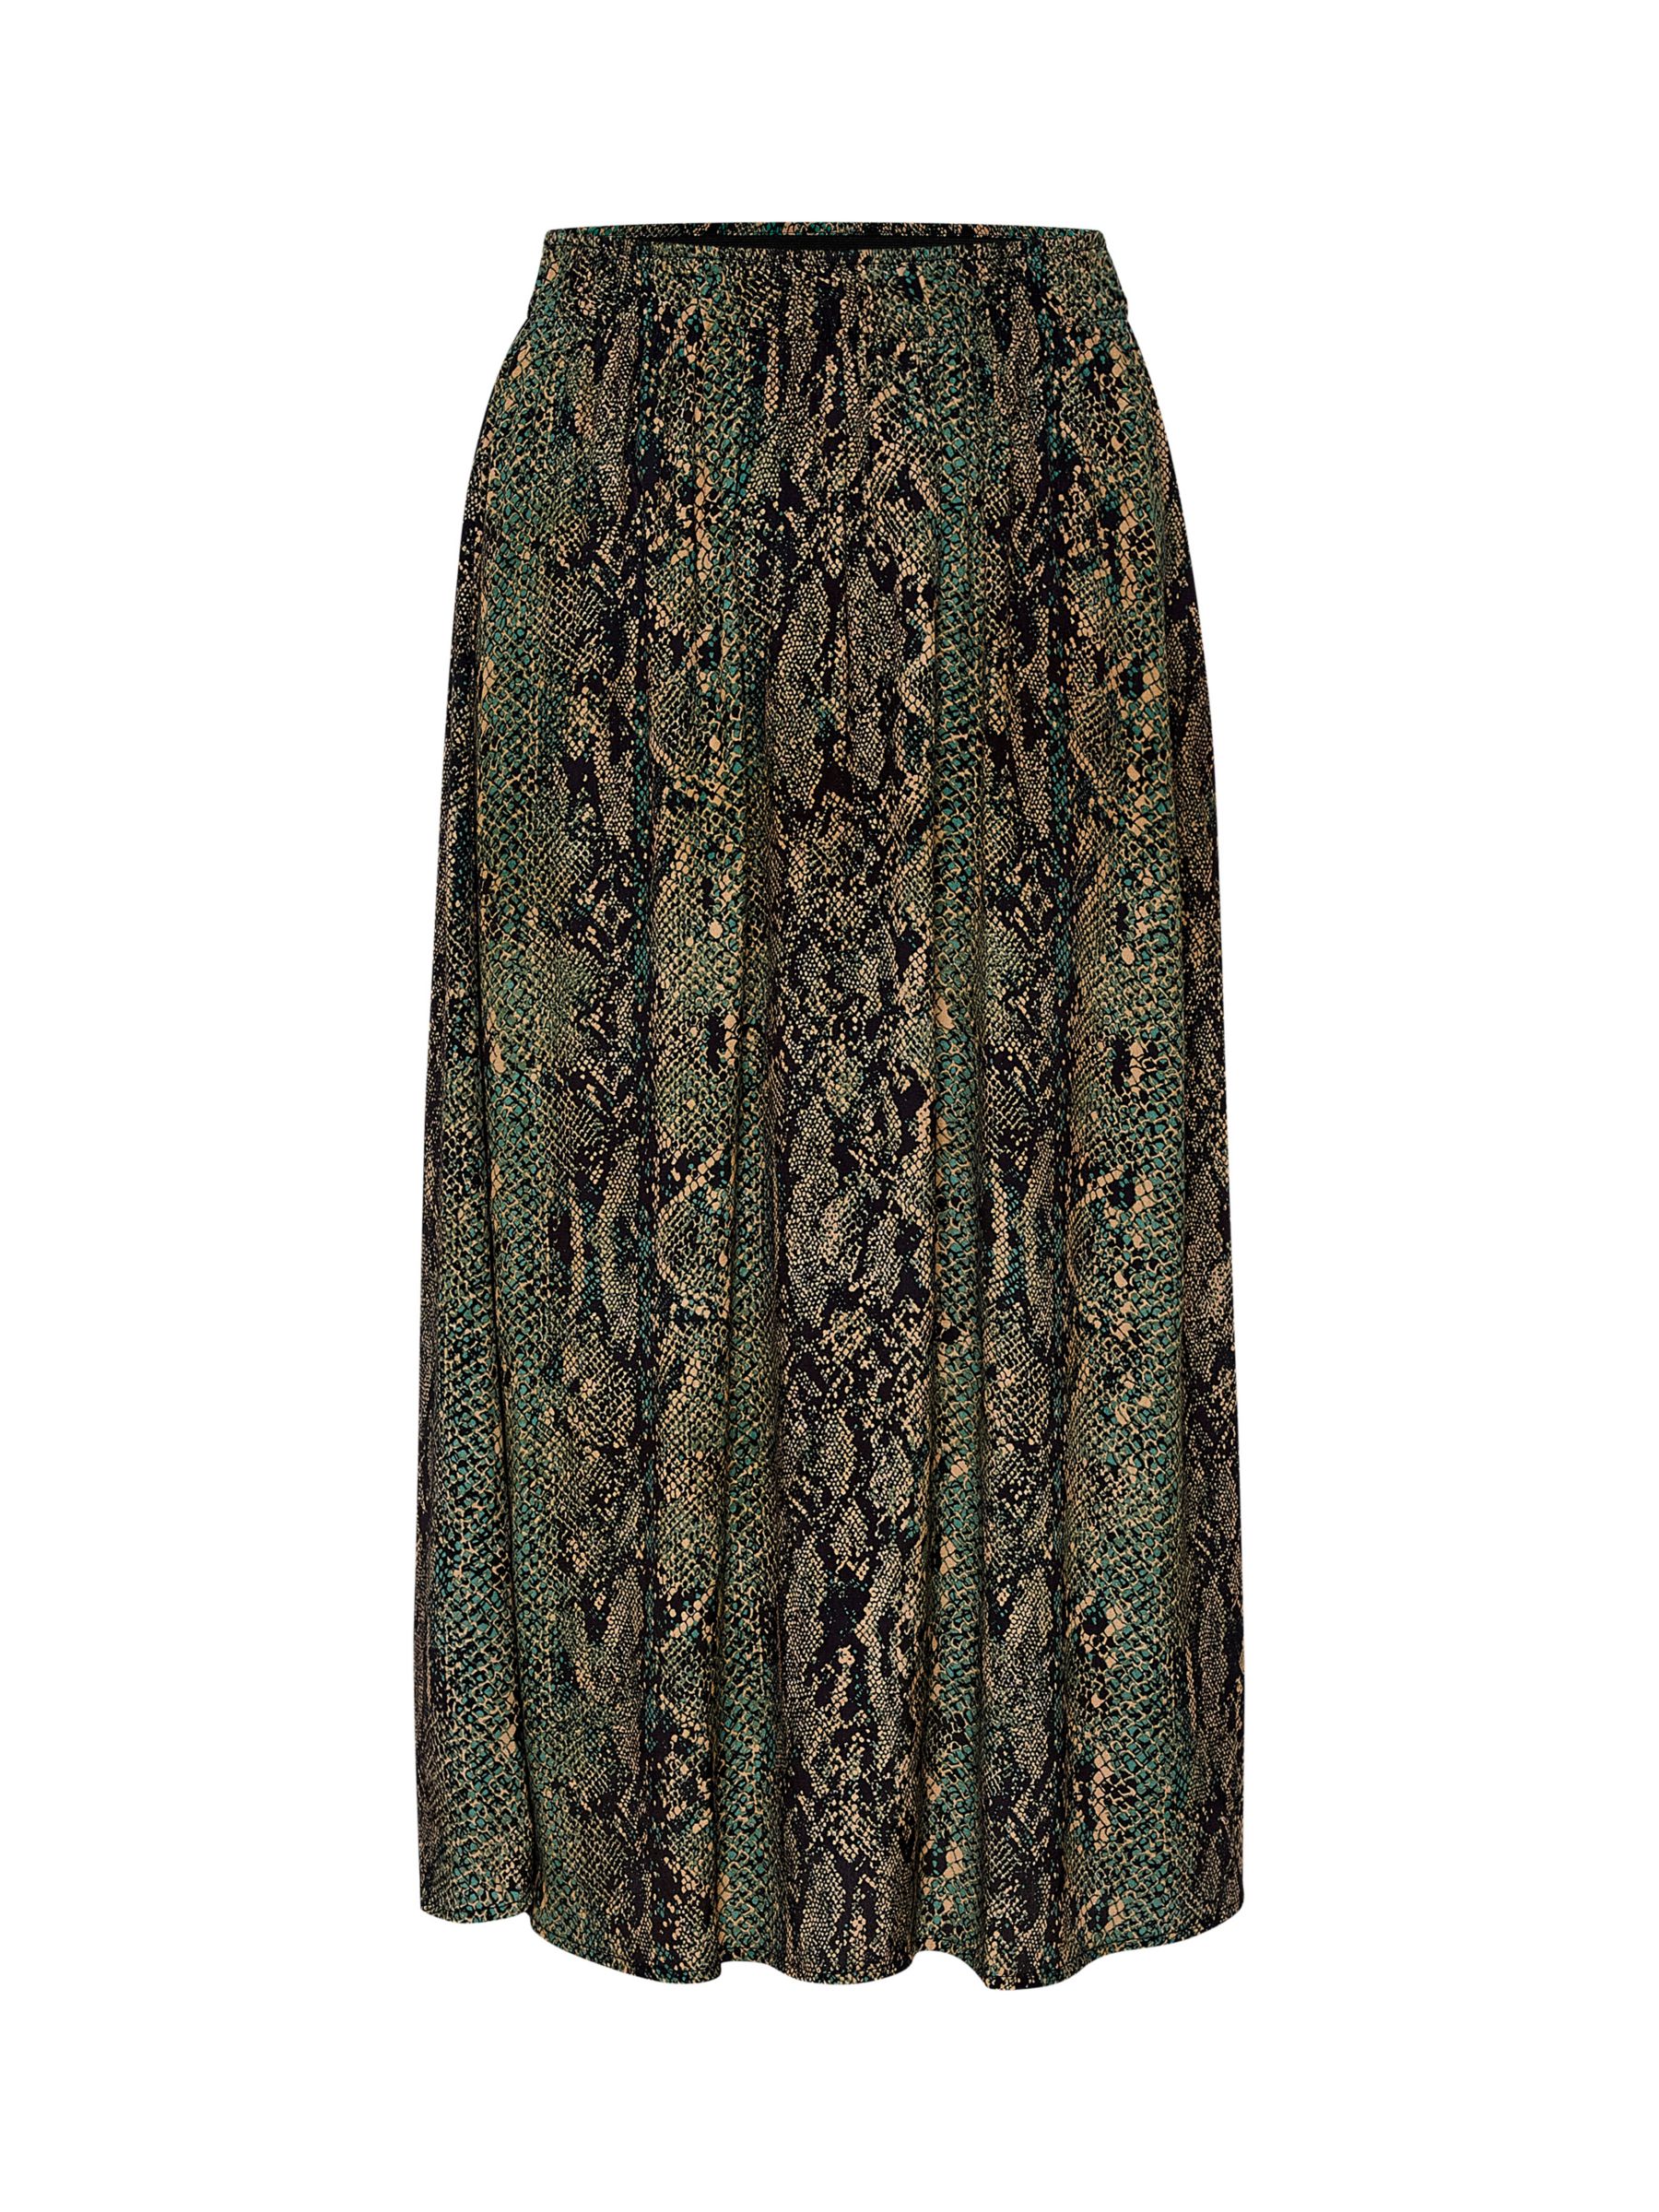 Buy Saint Tropez Tessa Elastic Waist Midi Skirt, Forest Snake Skin Online at johnlewis.com